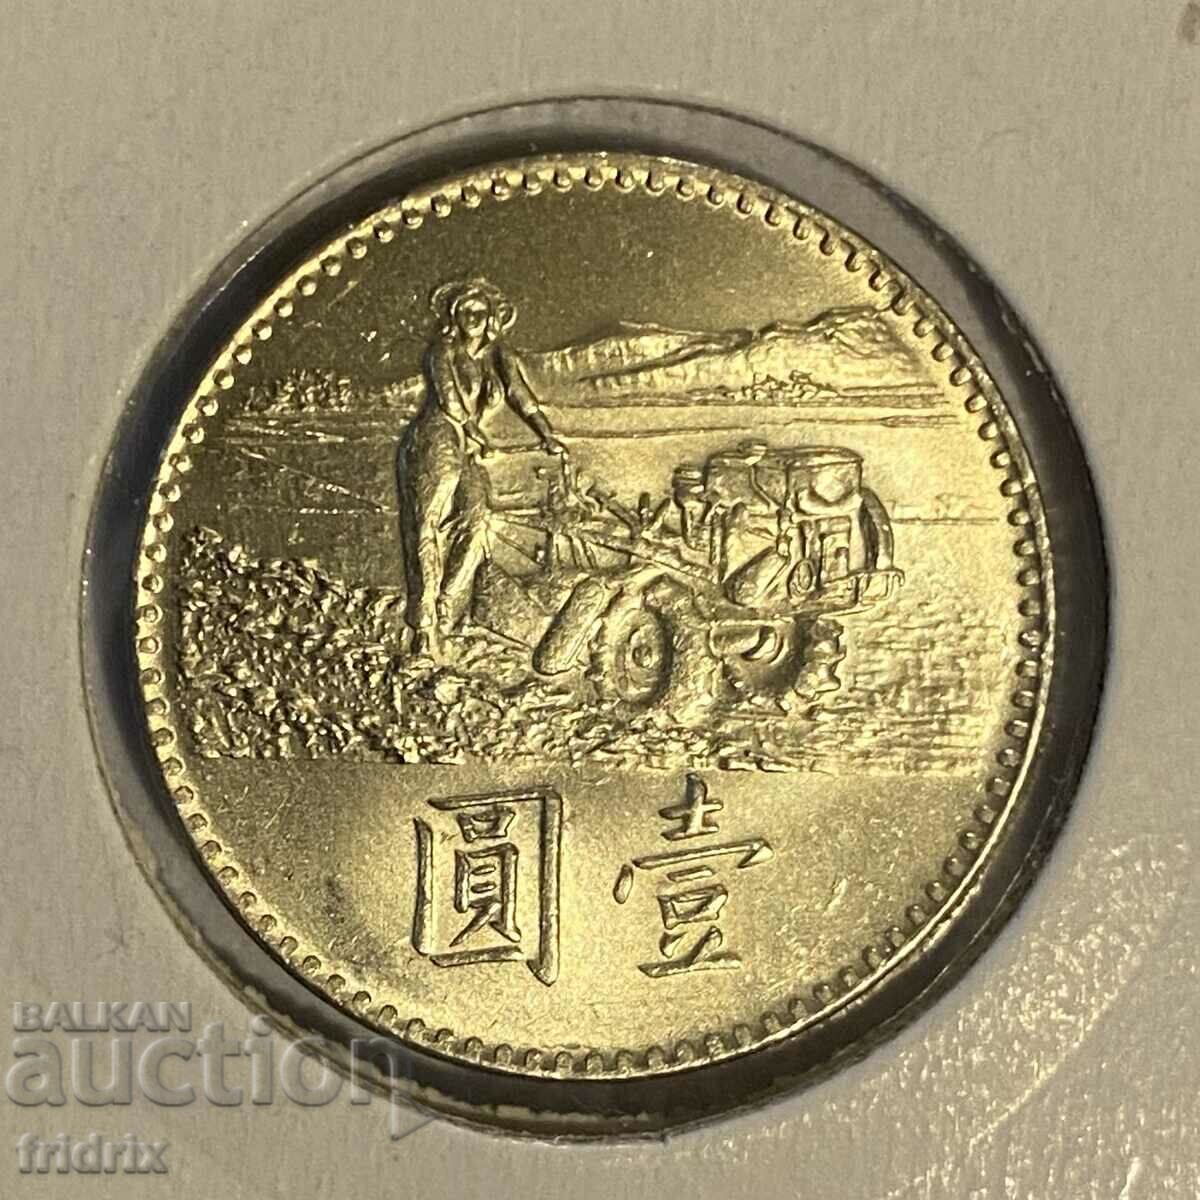 Ταϊβάν 1 γιουάν δολάριο FAO / Ταϊβάν 1 δολάριο 1969 FAO